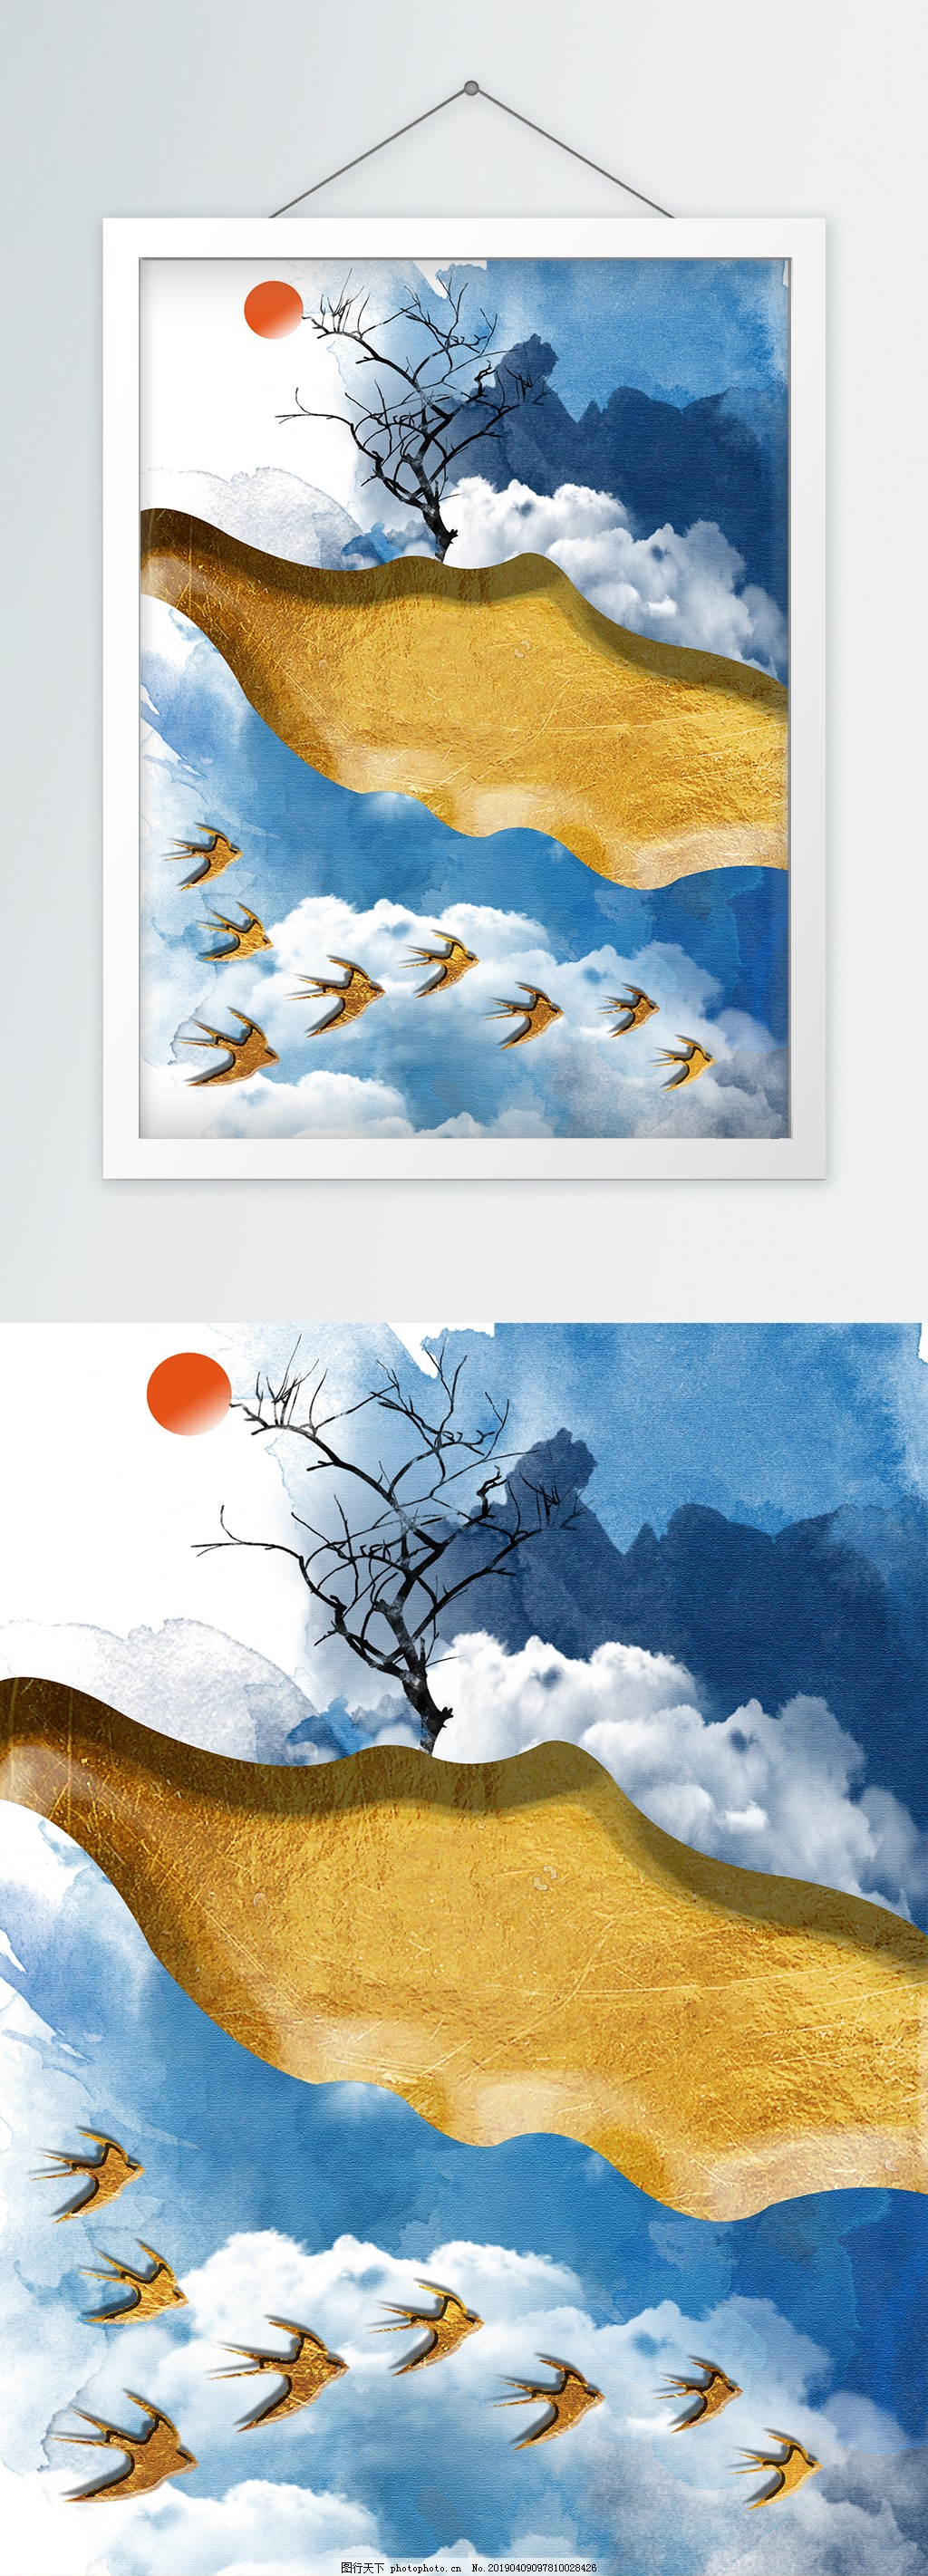 新中式抽象蓝色山石背景客厅装饰画,日出,金色立体山,蓝色水墨山,金色飞鸟